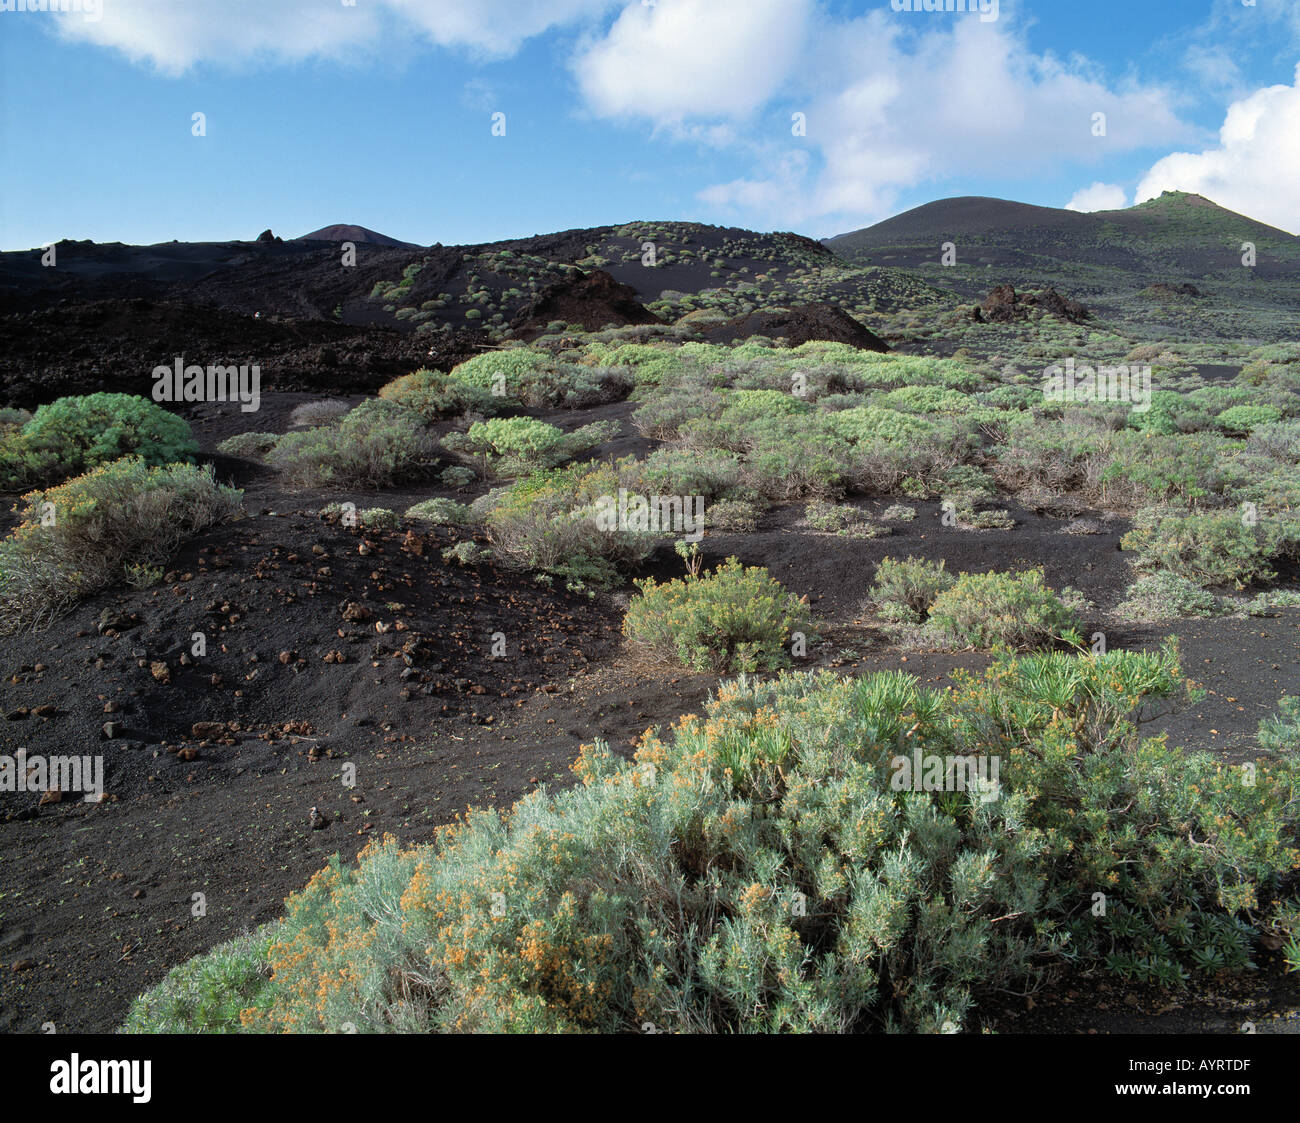 Vulkan Teneguia, Vulkanlandschaft Gewaechse Lavaasche, auf, junge Frau spaziert durch Vulkanlandschaft, Fuencaliente, La Palma, Kanarische Inseln Banque D'Images